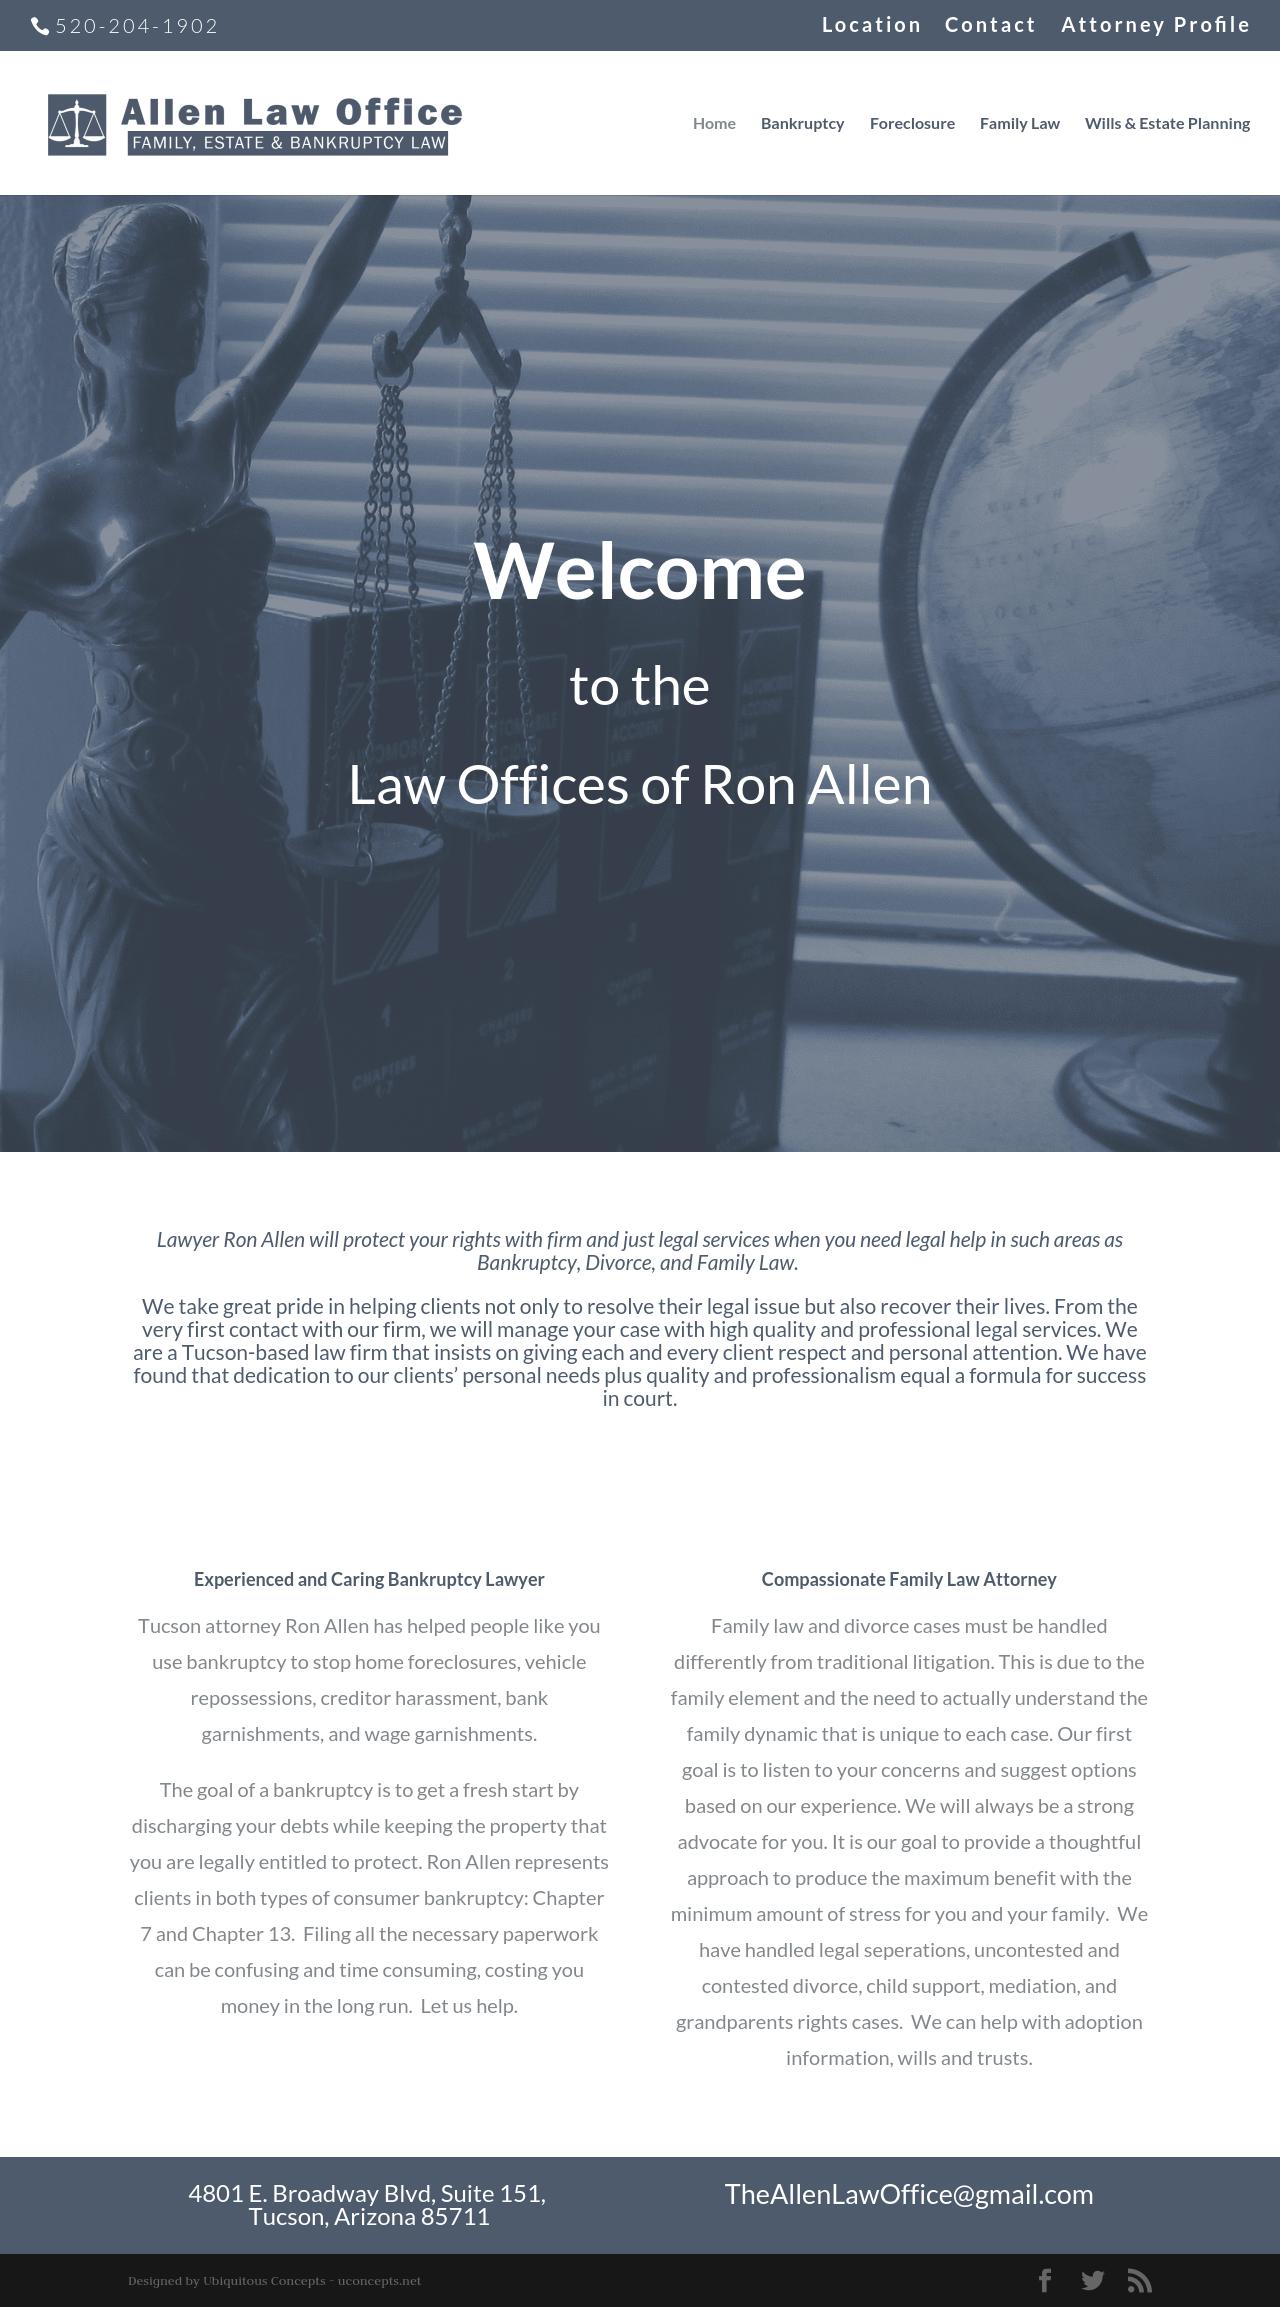 Allen Law Office - Tucson AZ Lawyers